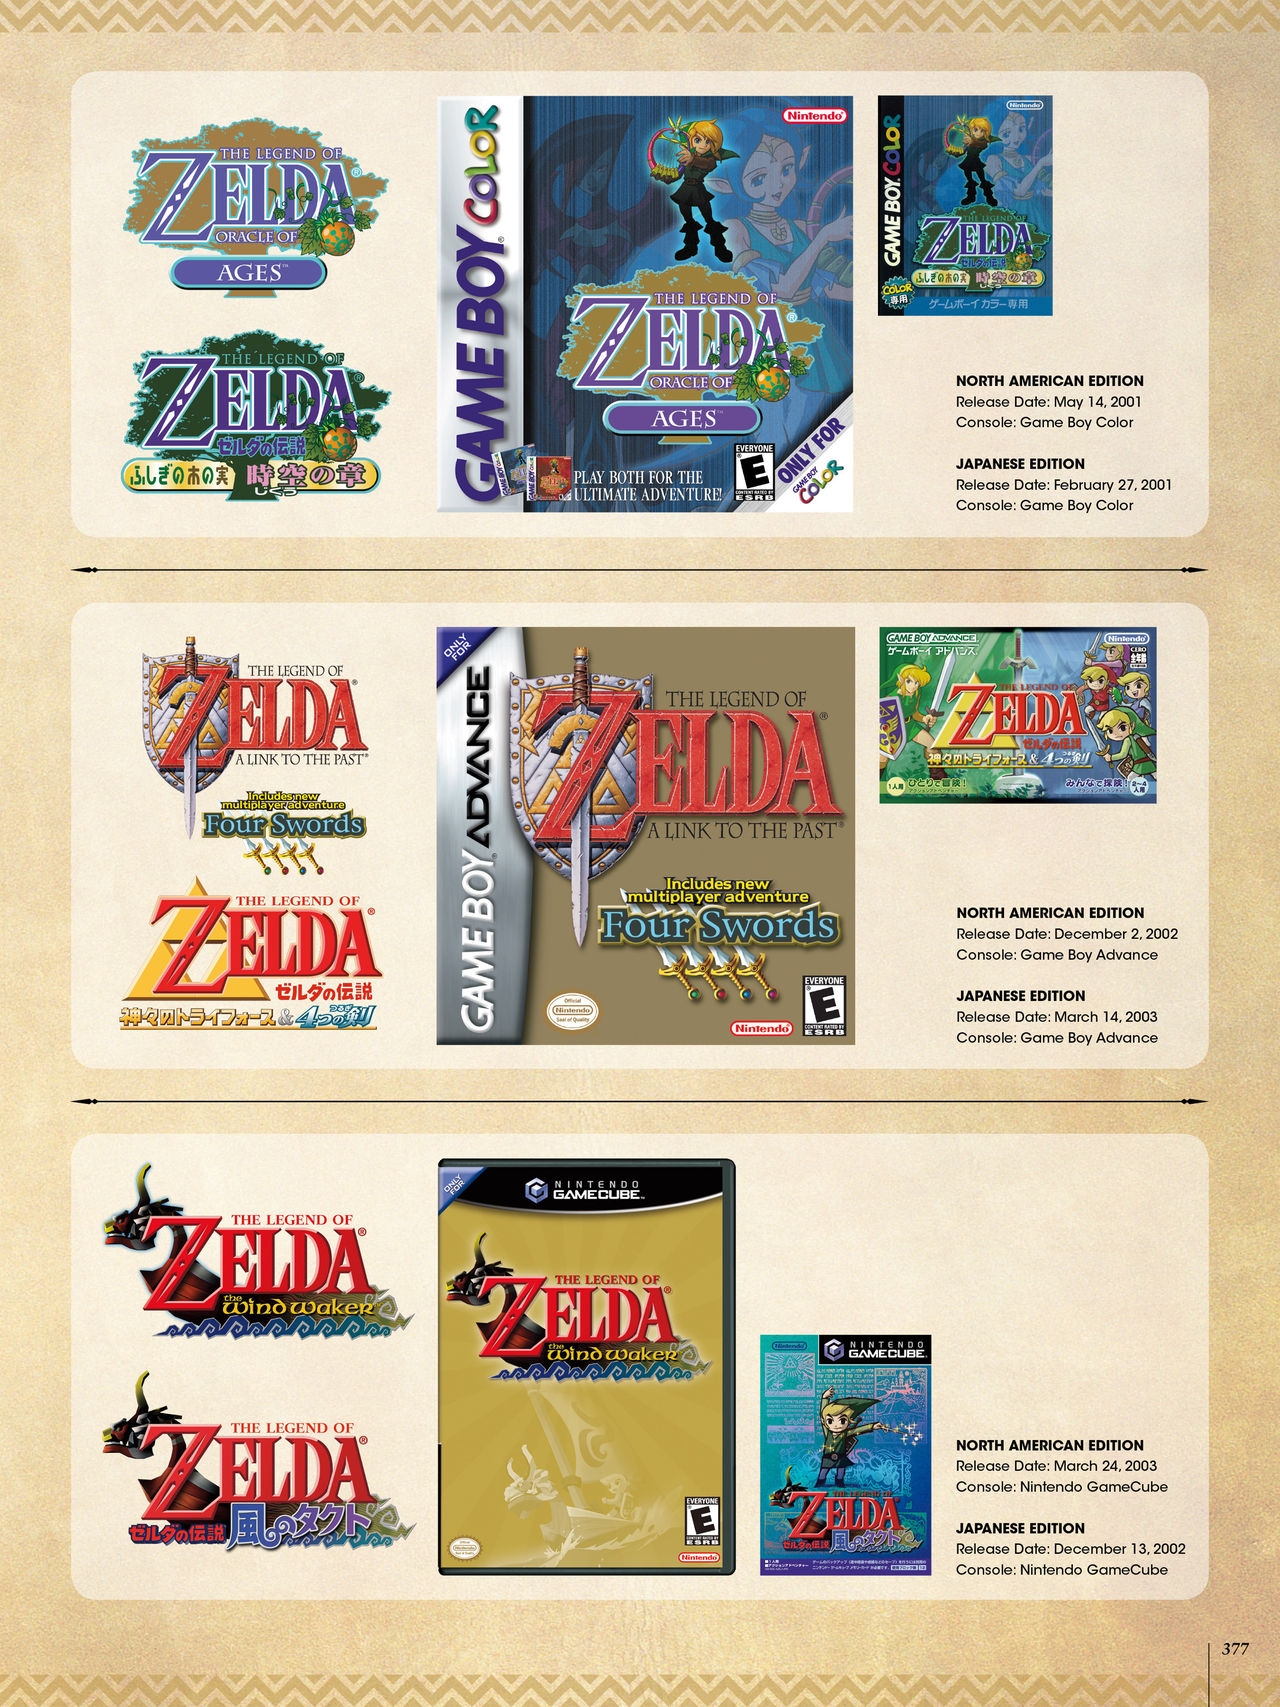 The Legend of Zelda - Art & Artifacts 250